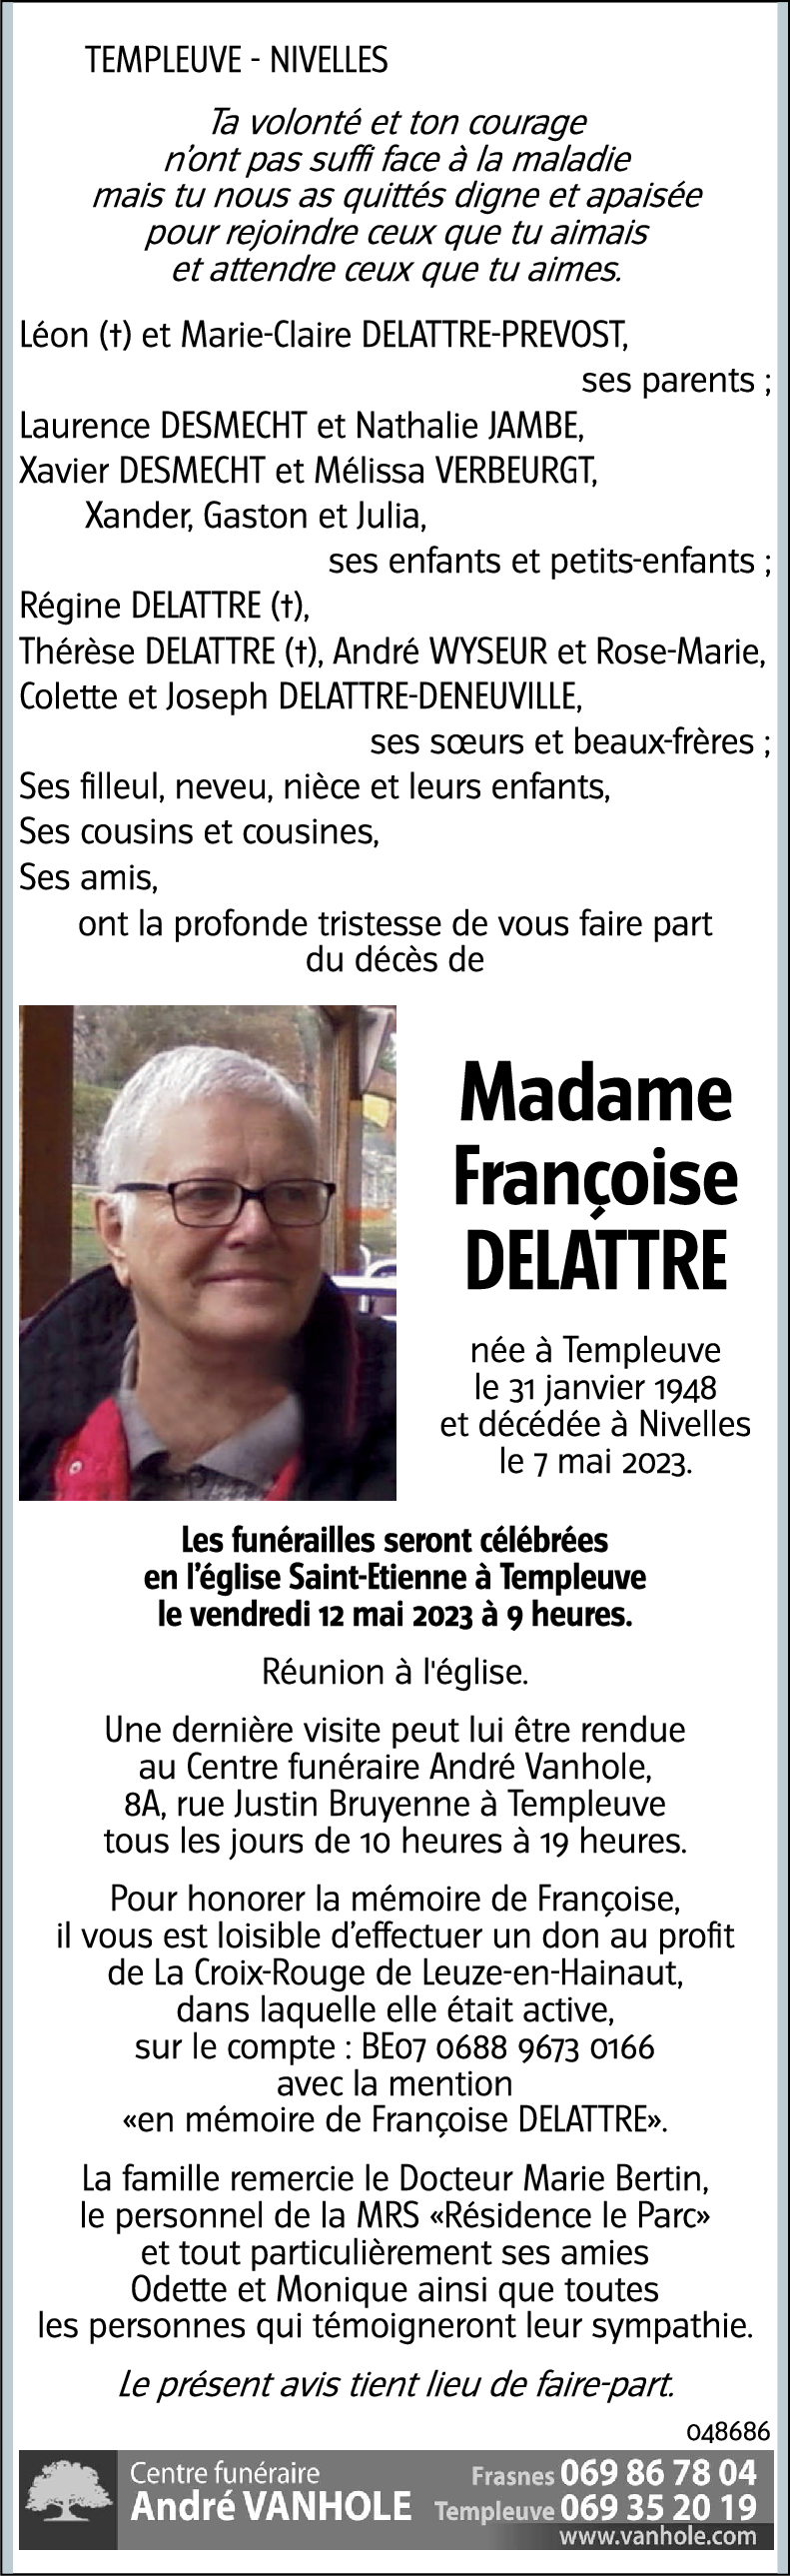 Françoise DELATTRE